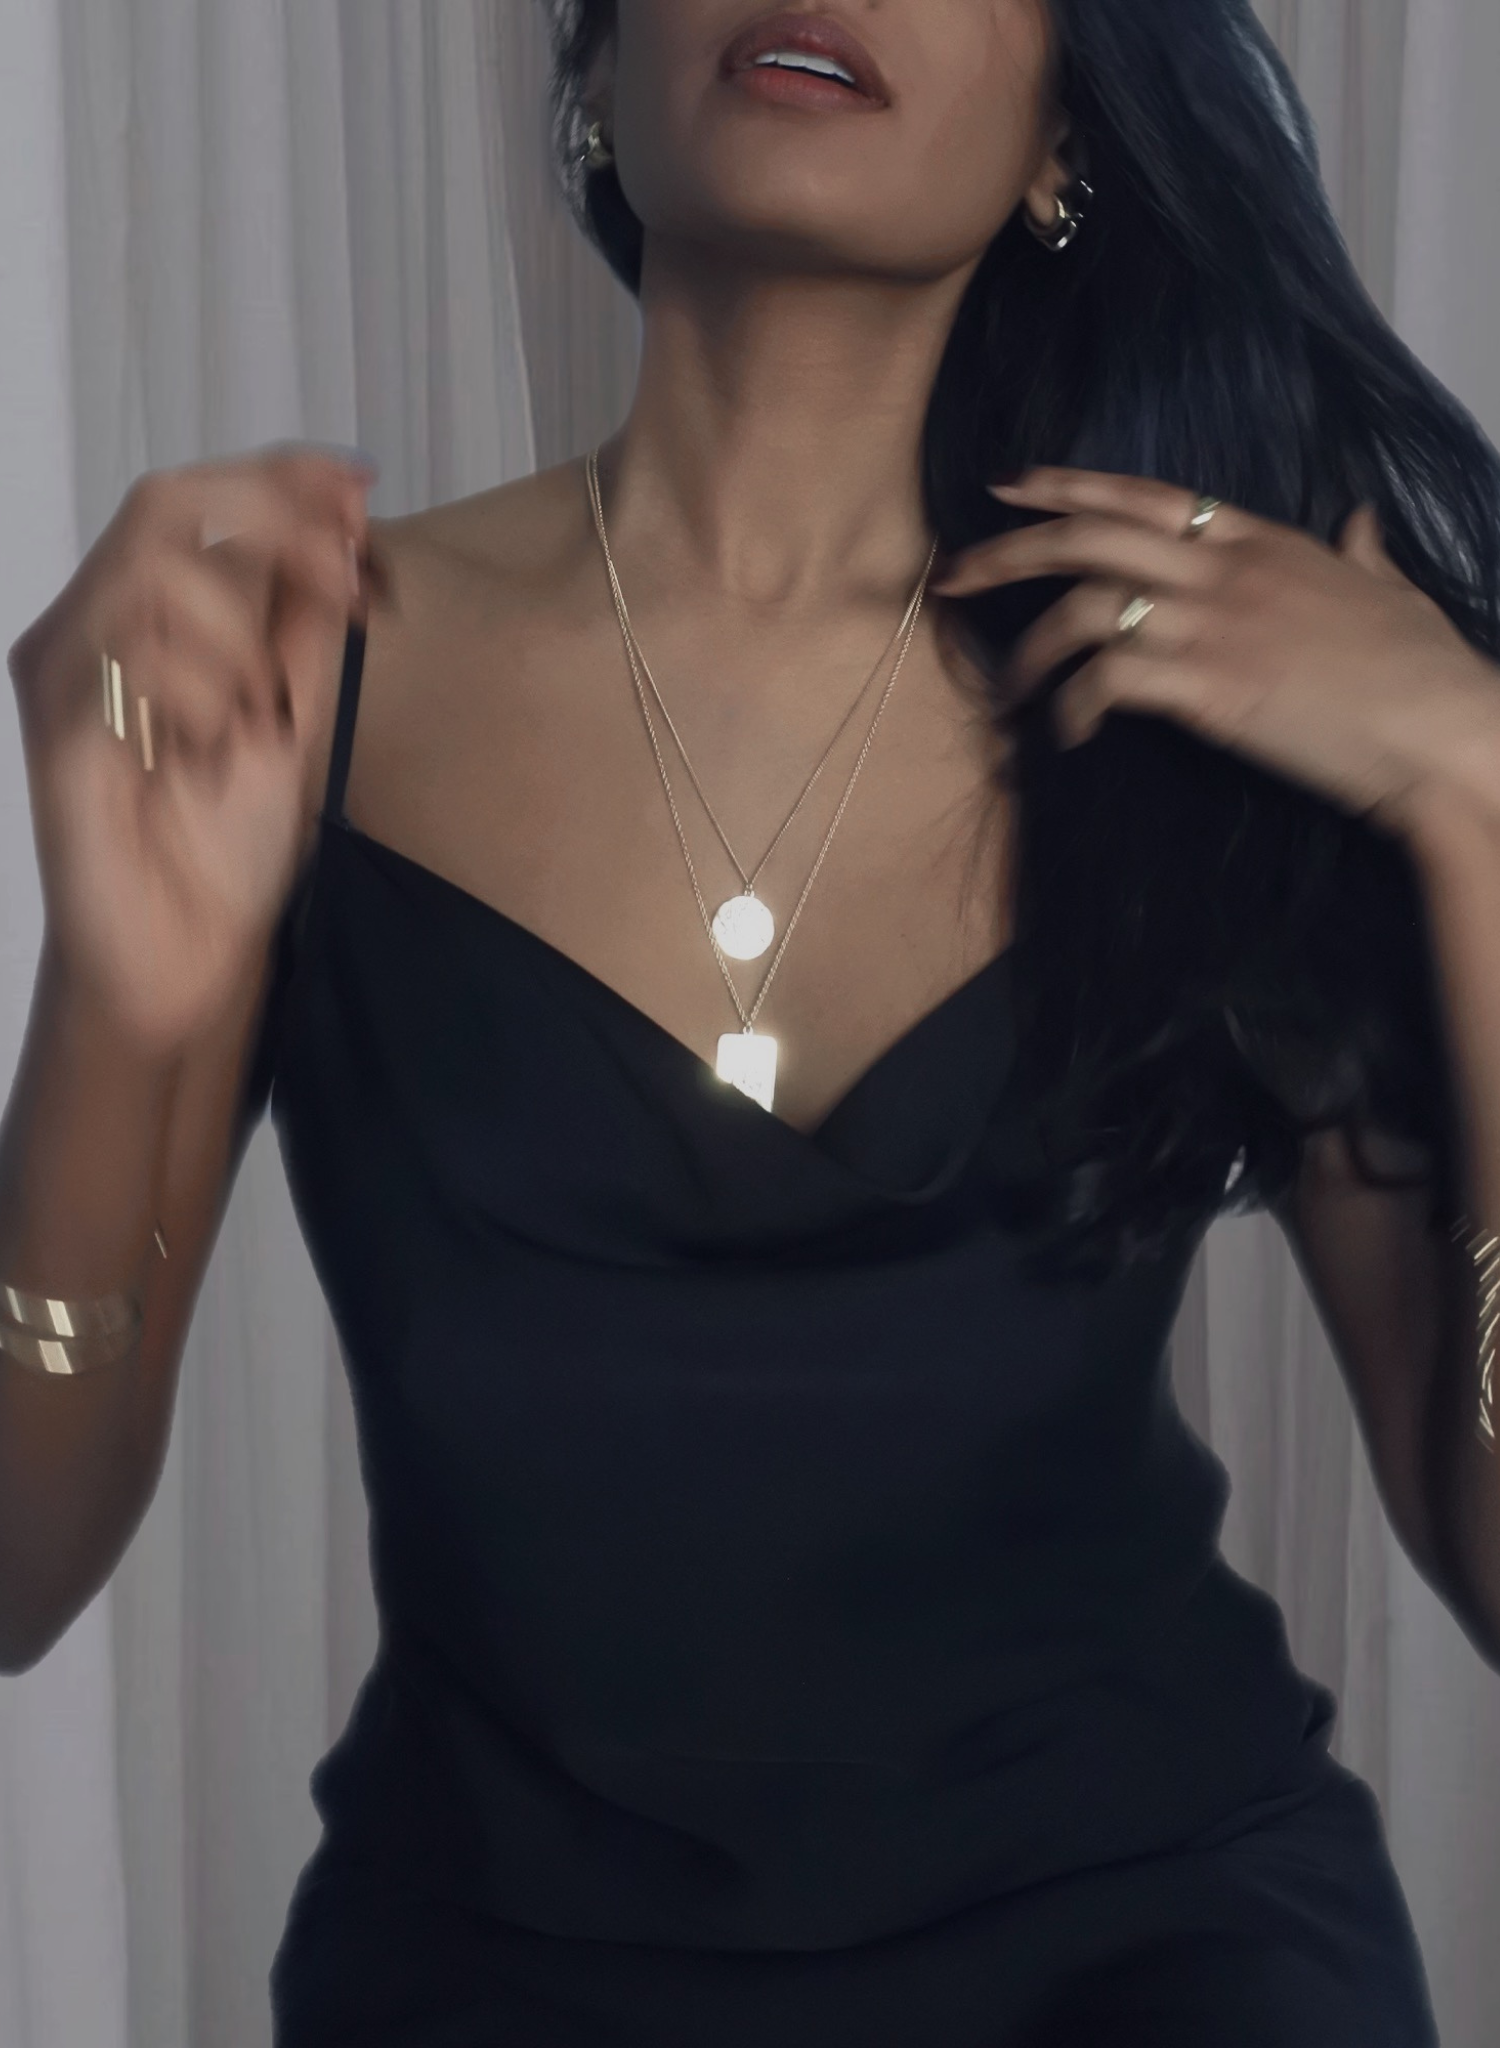 collier-unalome-argent-bijou-femme-madeinfrance-fait-en-france-Bento-jewelry